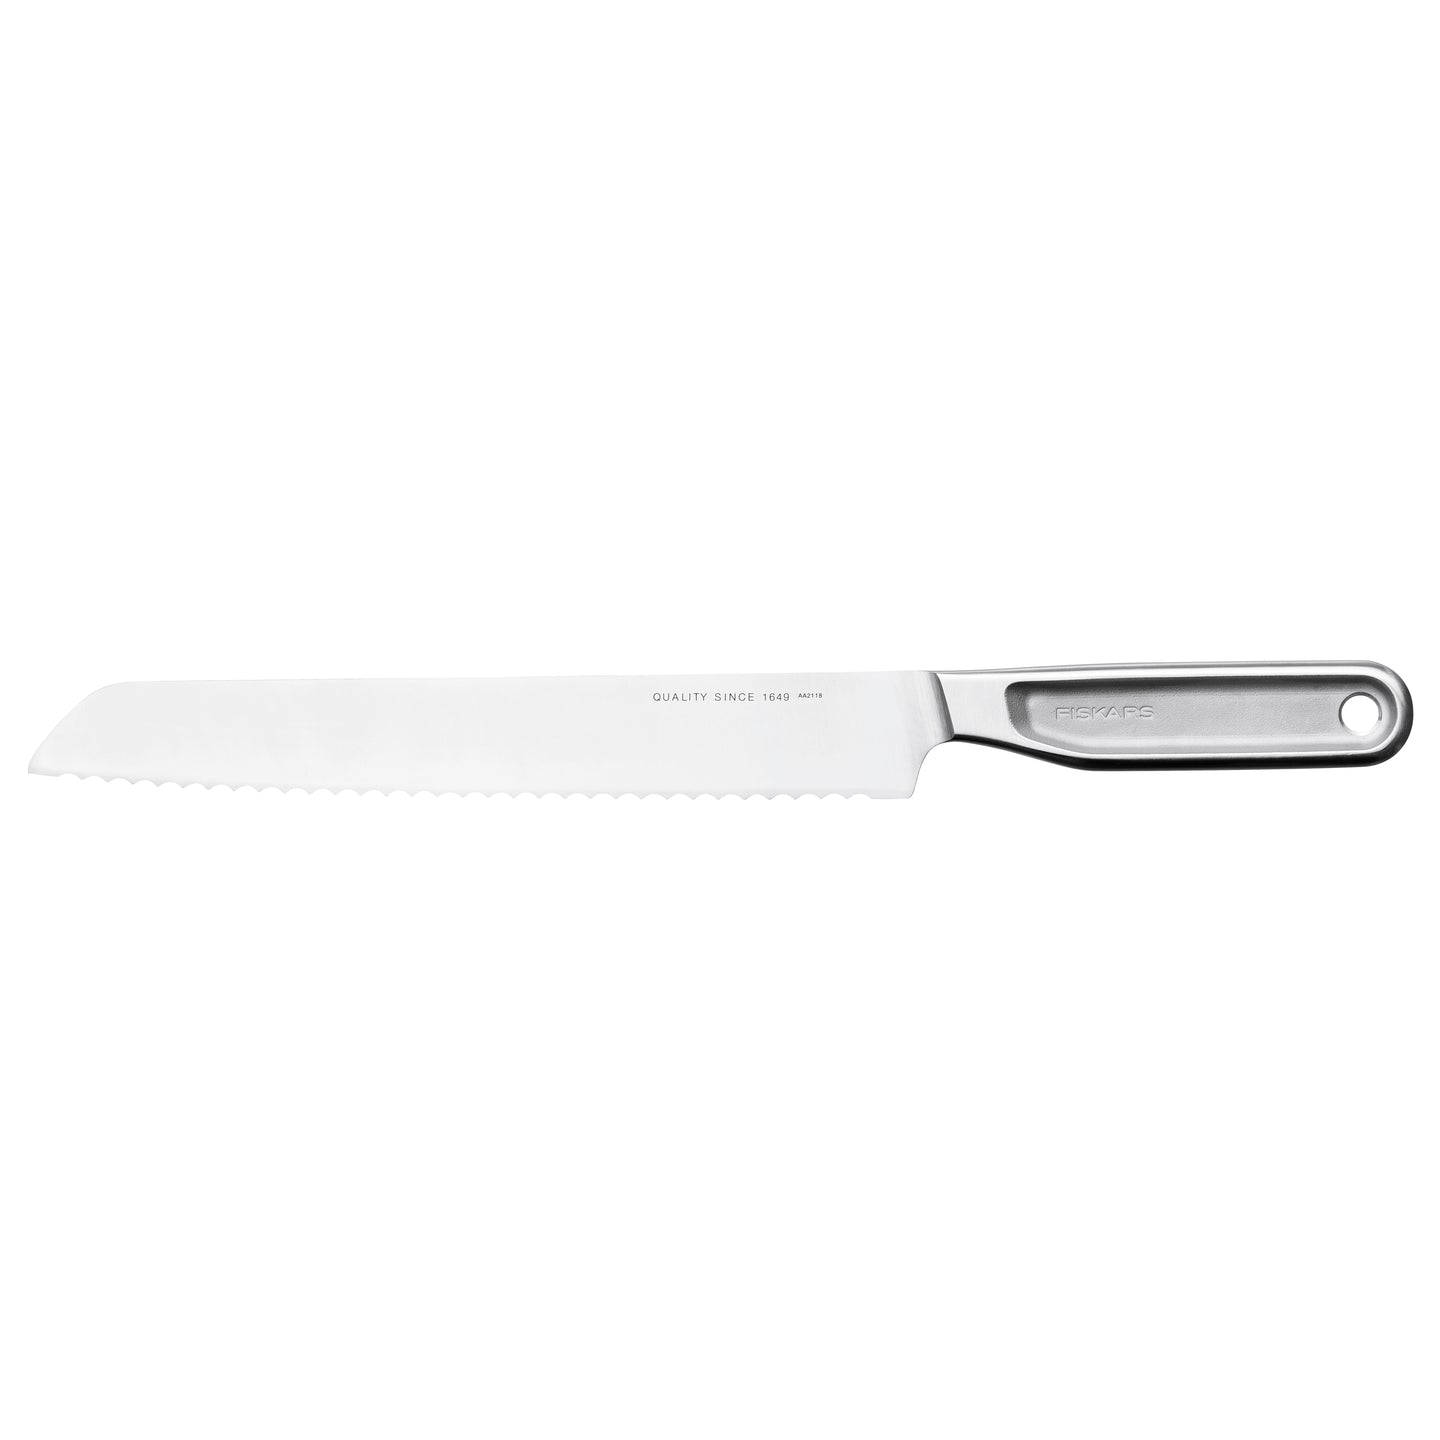 All Steel bread knife 22cm - fiskars - Bluecashew Kitchen Homestead